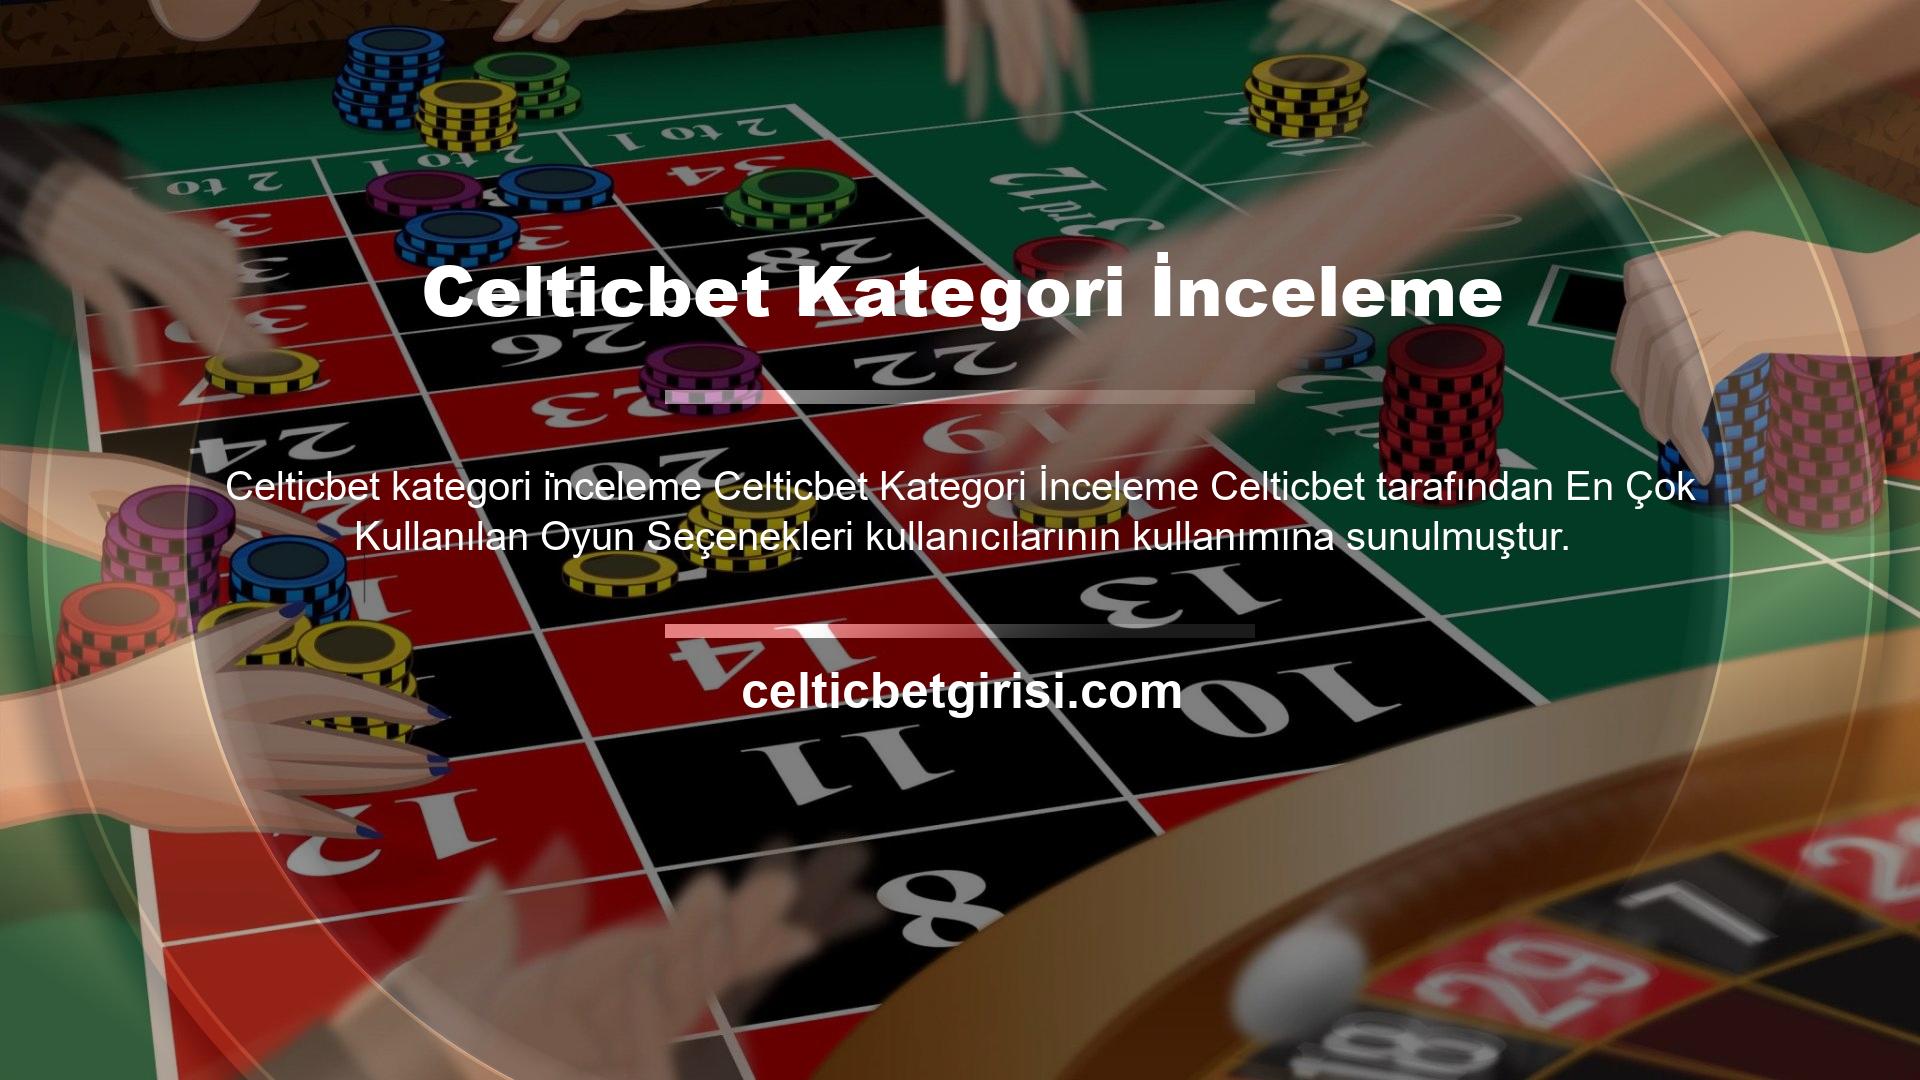 Kayıt olmadan önce site içeriğini anlamak için Celticbet inceleme başlığı ile bahis forumunu takip edebilirsiniz